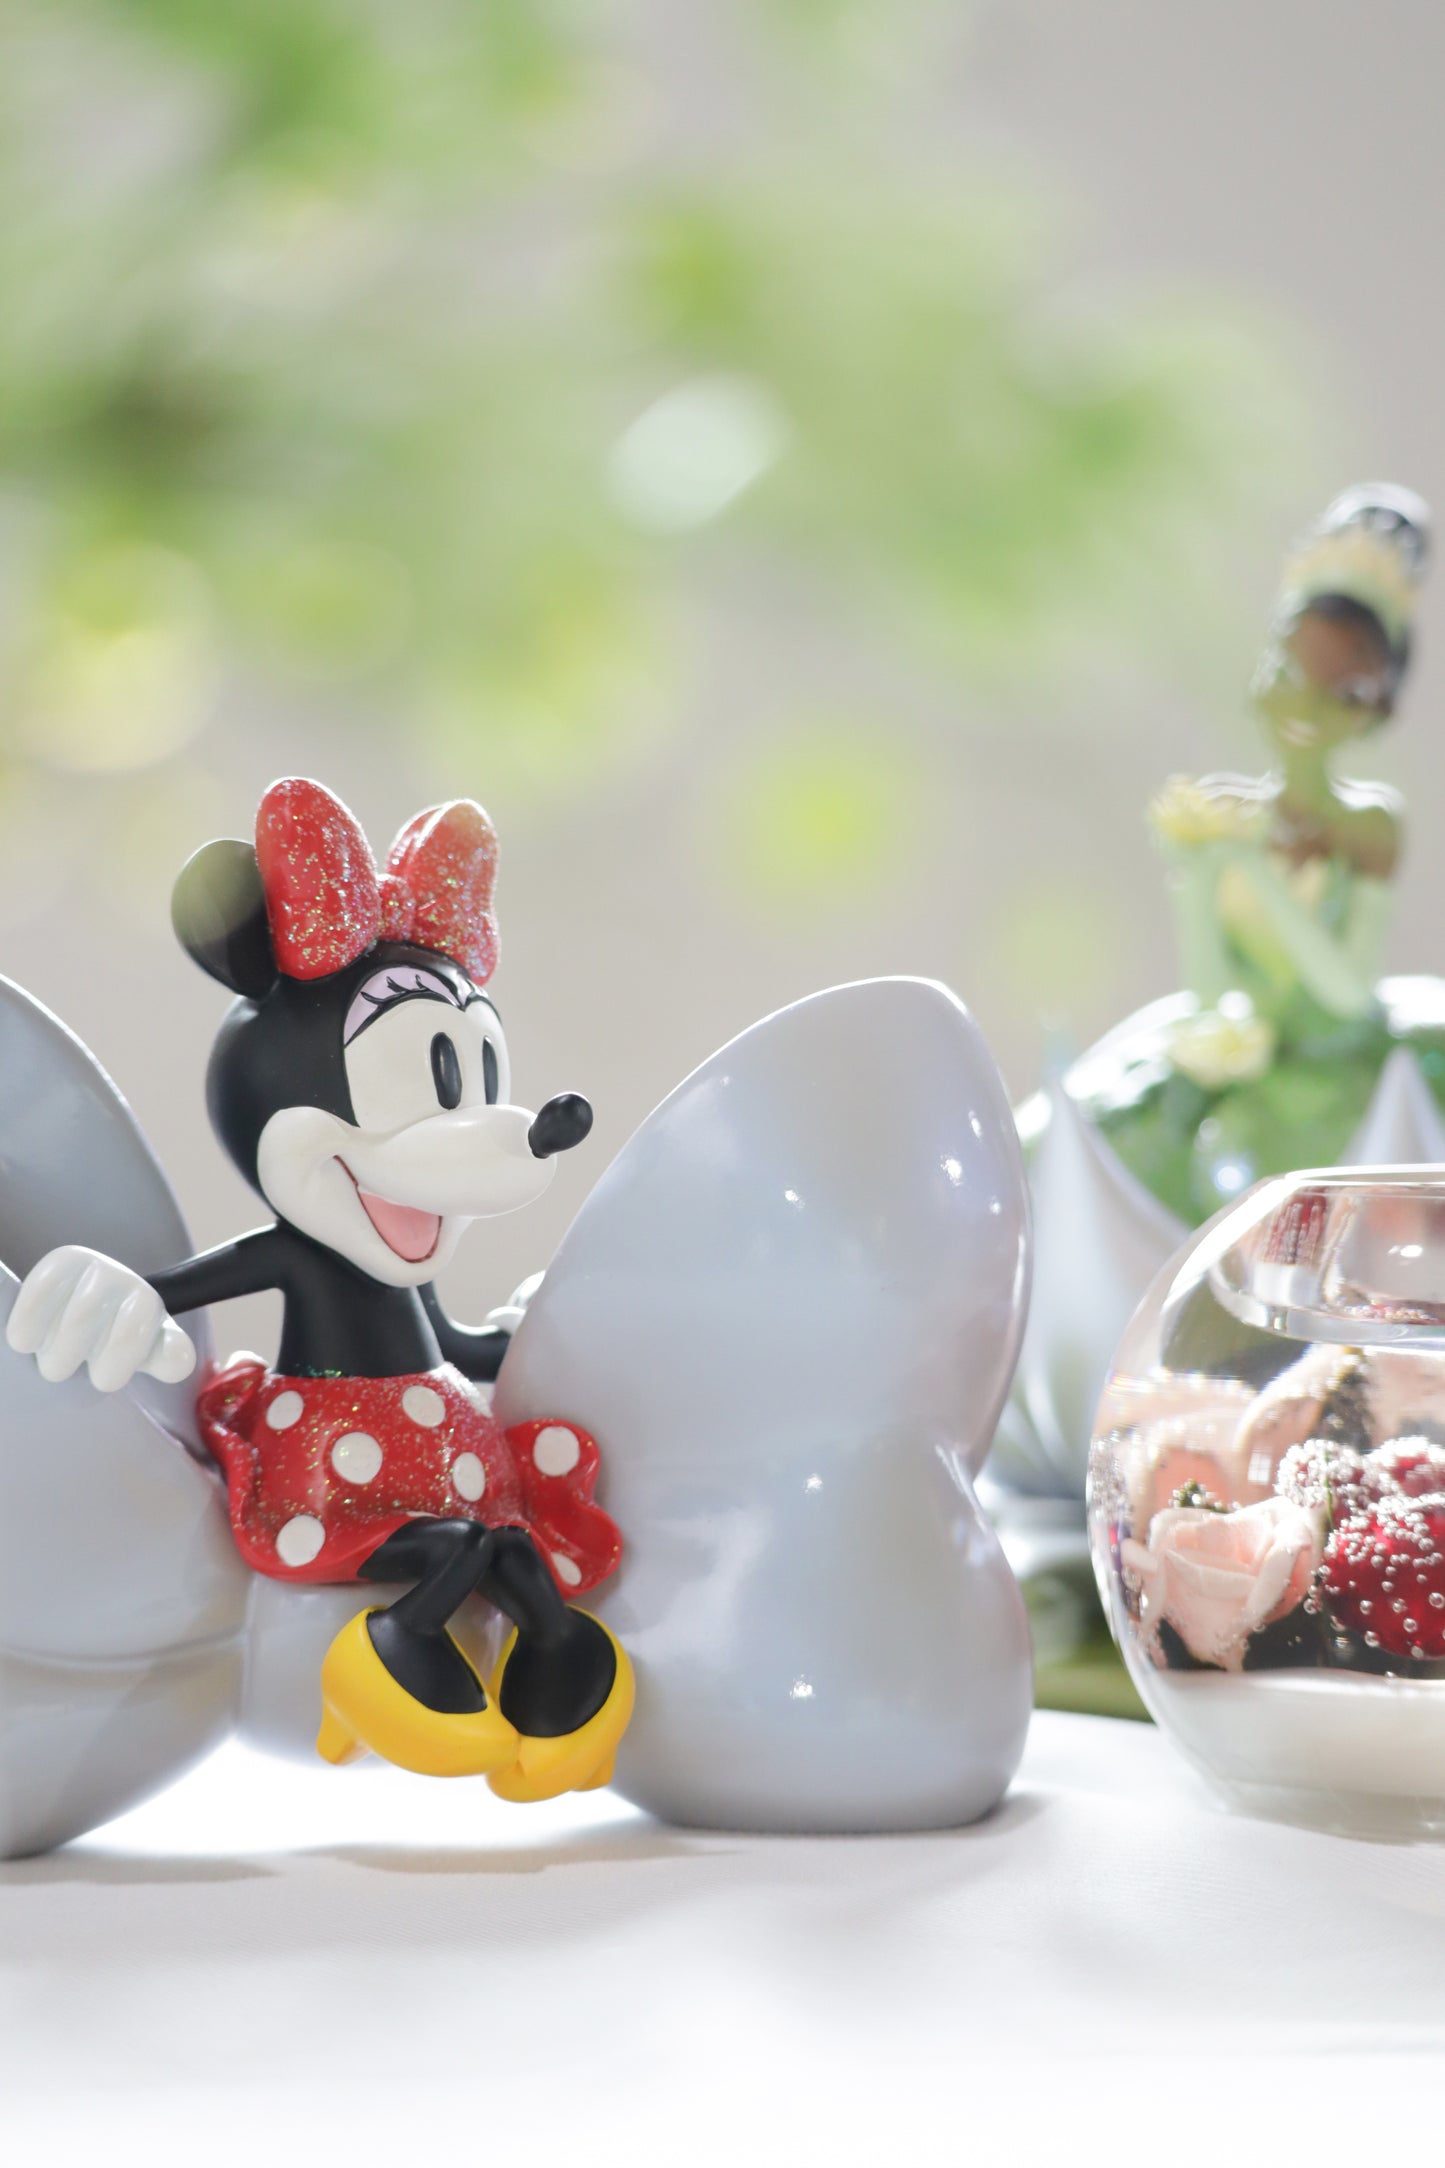 【ディズニー100周年記念】D100 Minnie Mouse ディズニーショーケース【enesco】